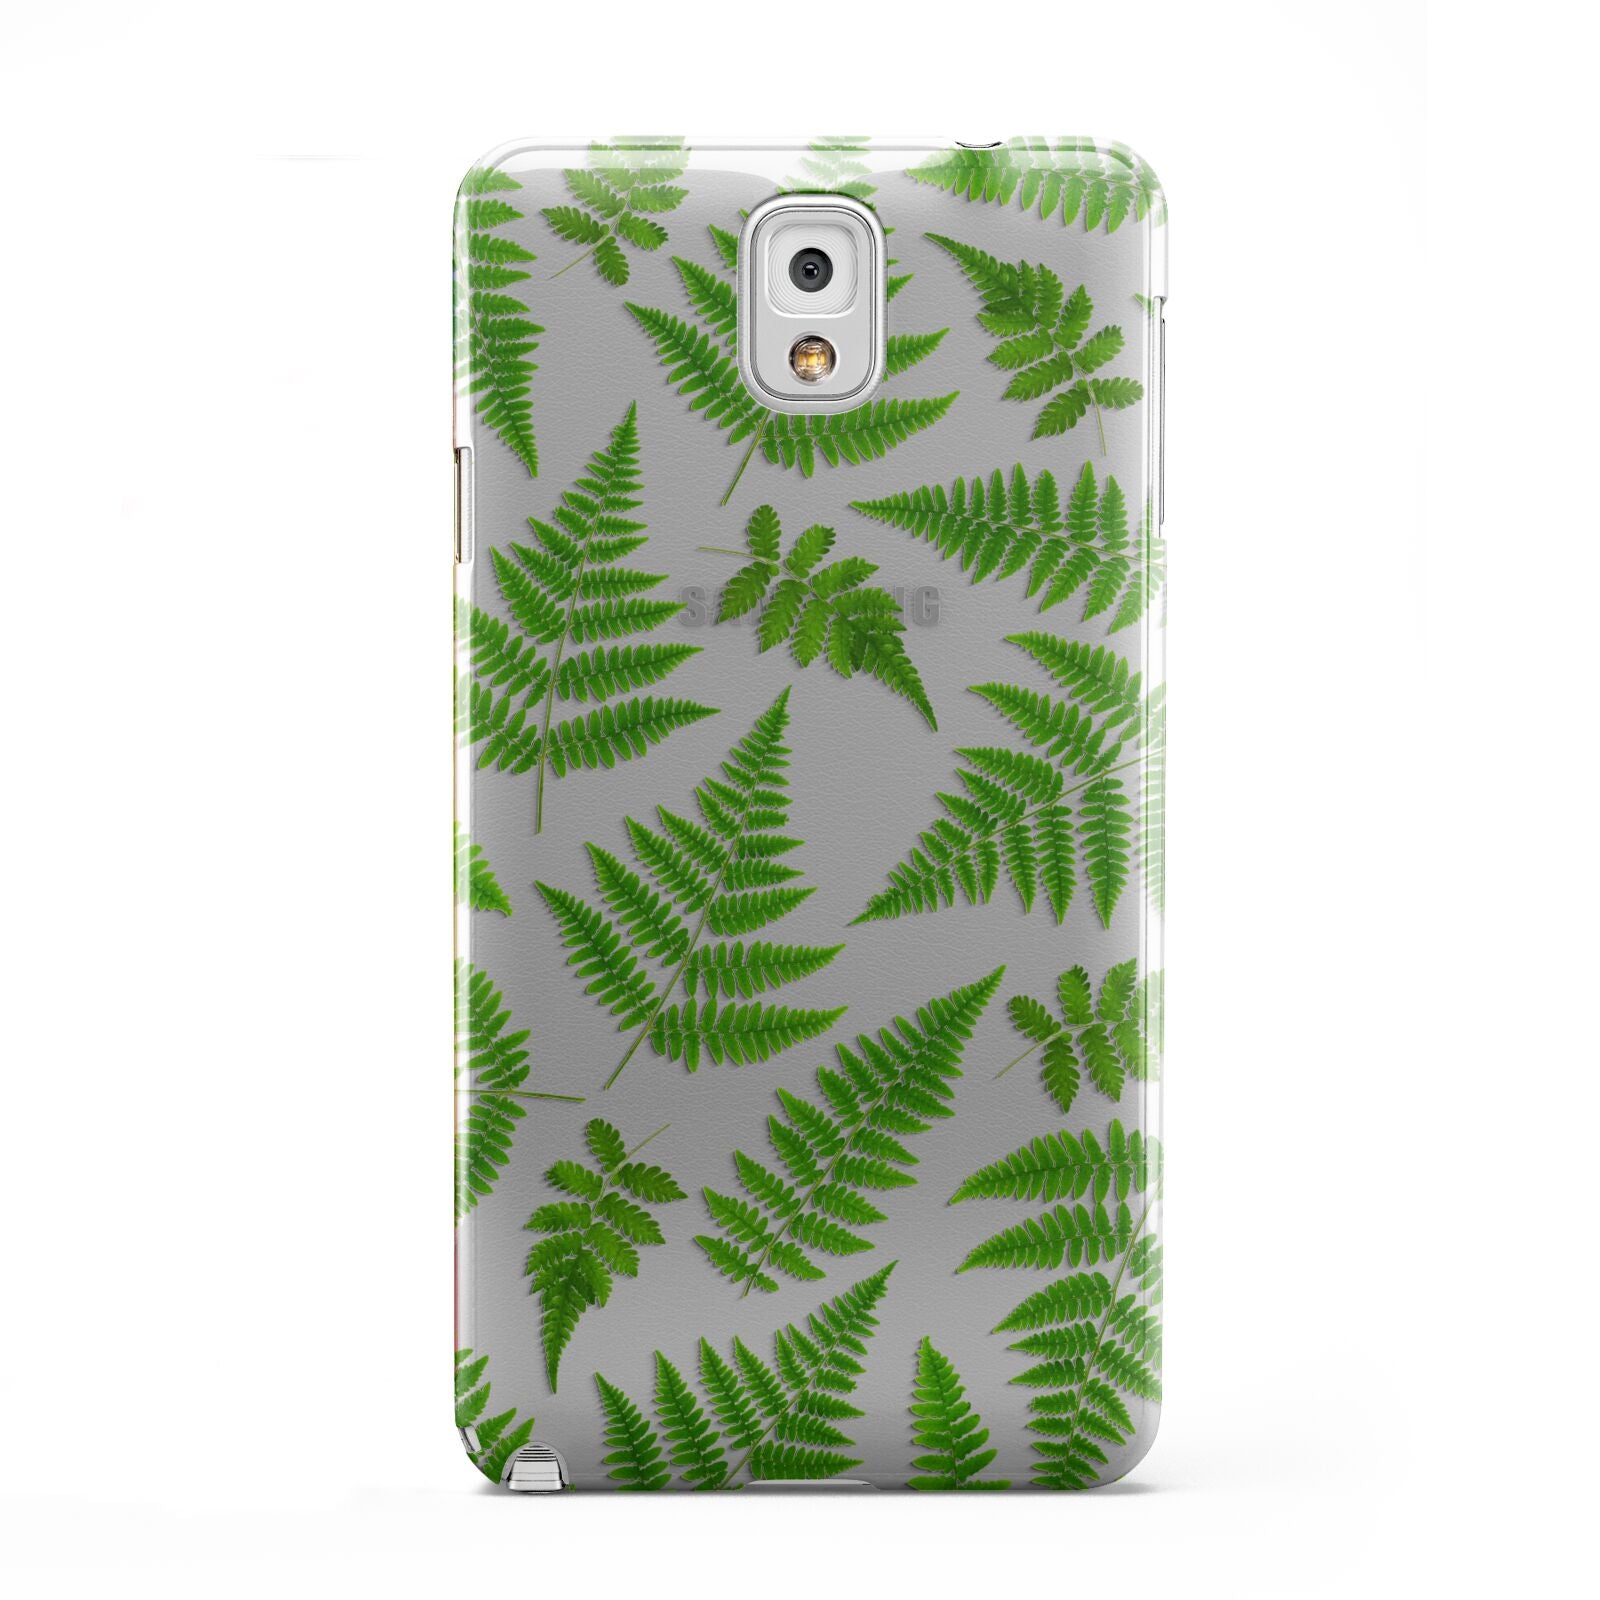 Fern Leaf Samsung Galaxy Note 3 Case